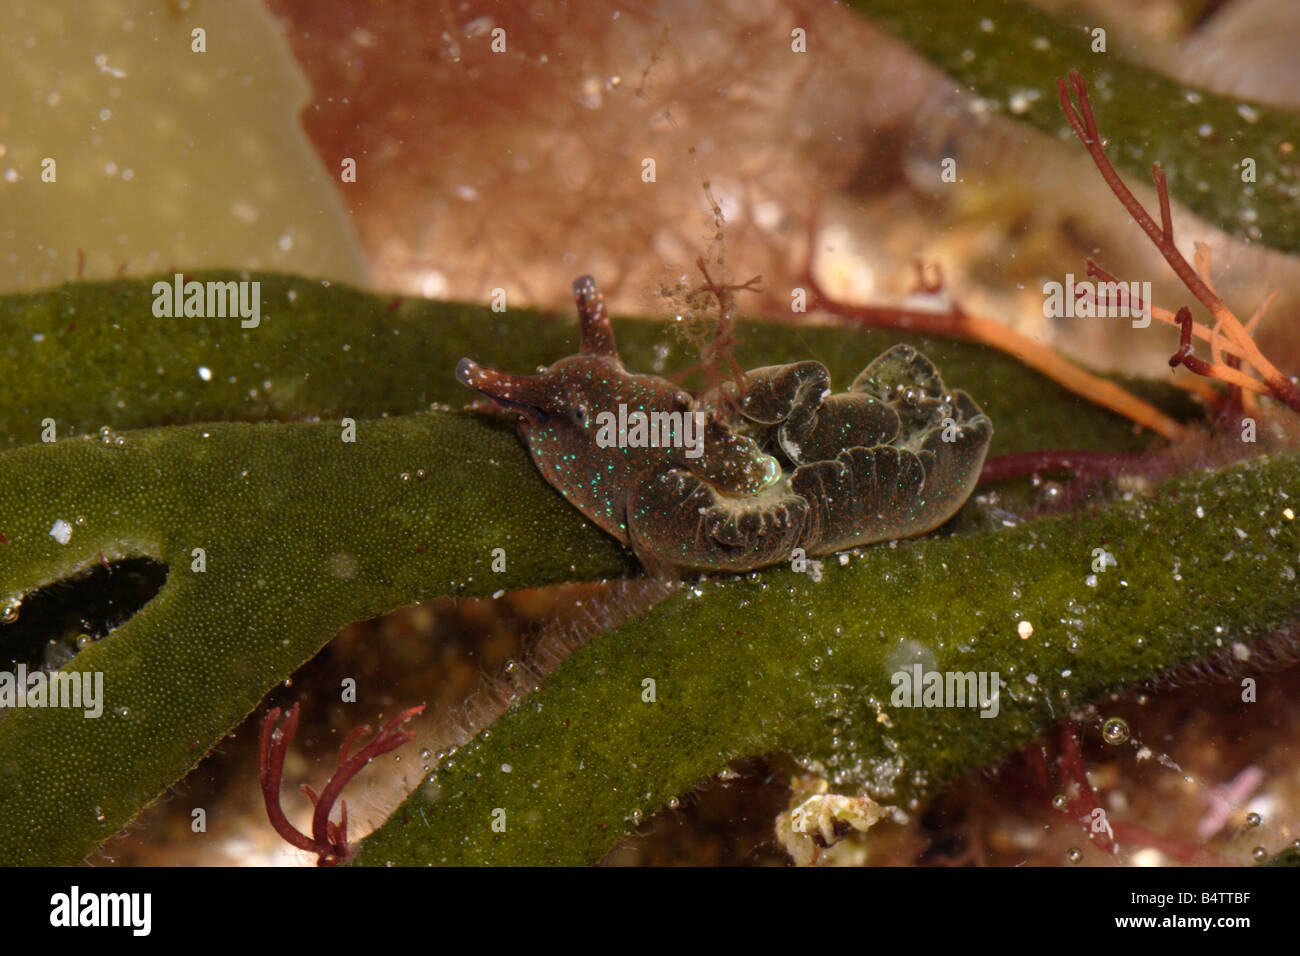 A sea slug Elysia viridis Elysiidae on its foodplant velvet horn Codium tomentosum a green seaweed UK Stock Photo